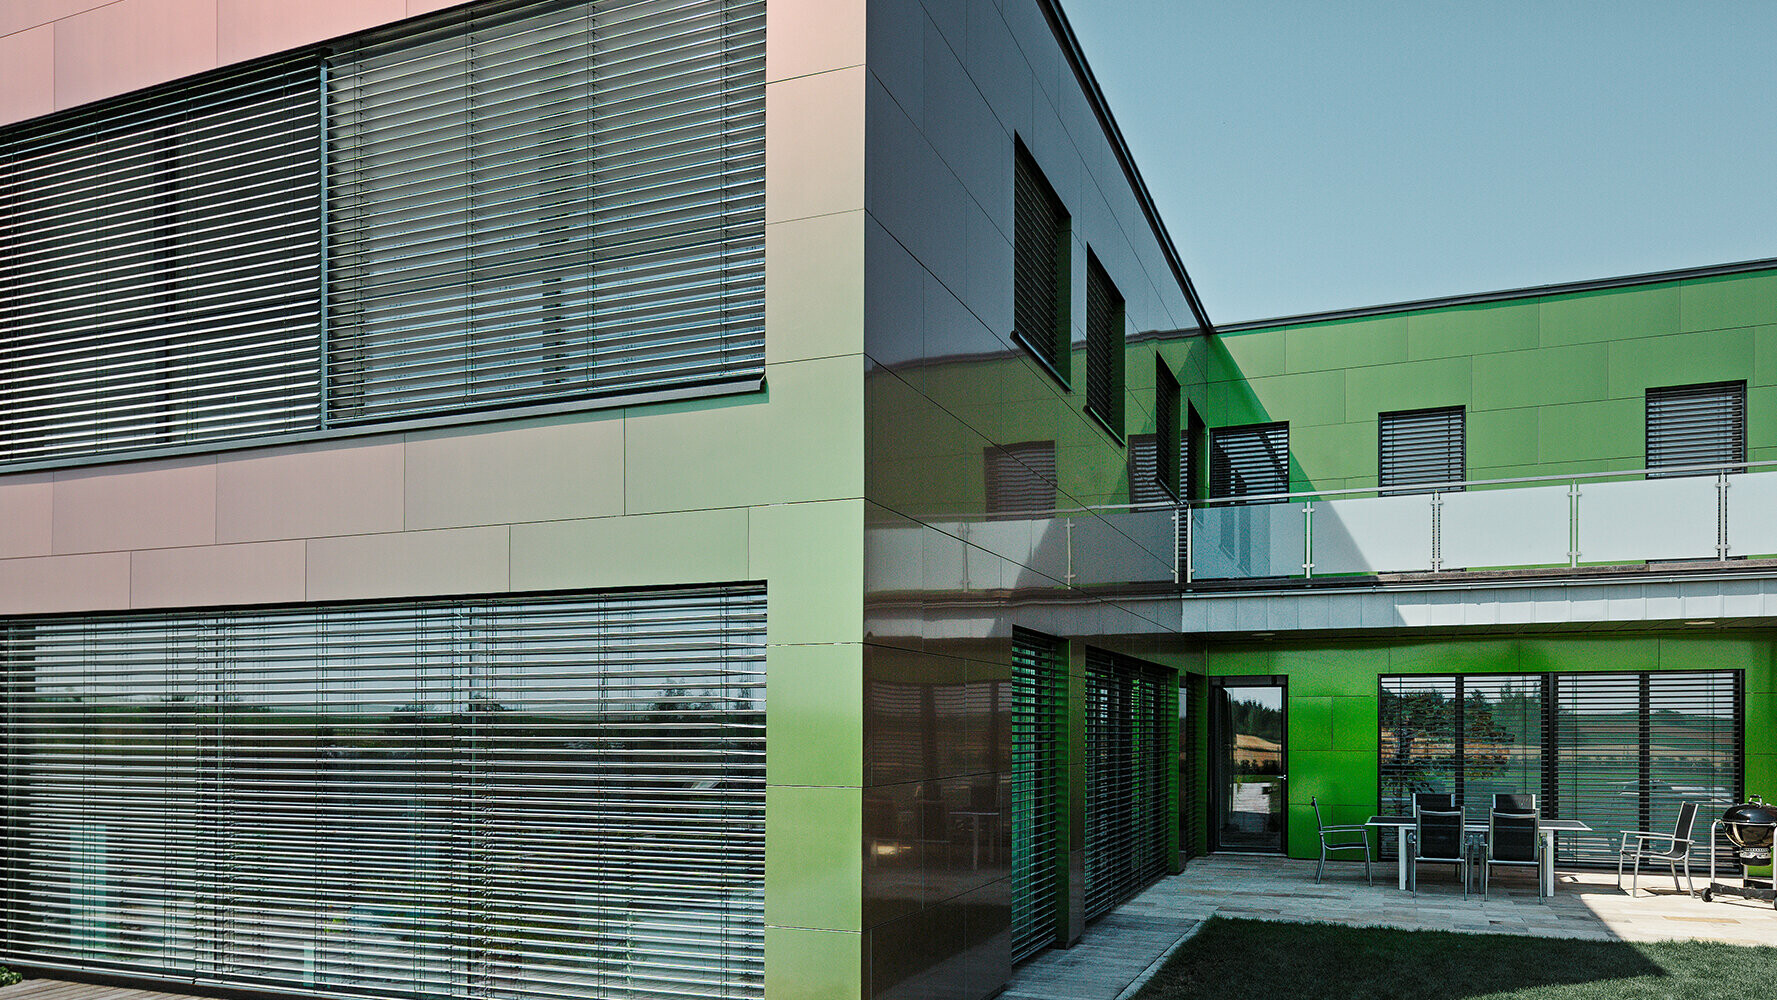 Selon la lumière et la perspective, la façade revêtue de panneaux composites de cette maison apparaît en brun, vert ou violet foncé.